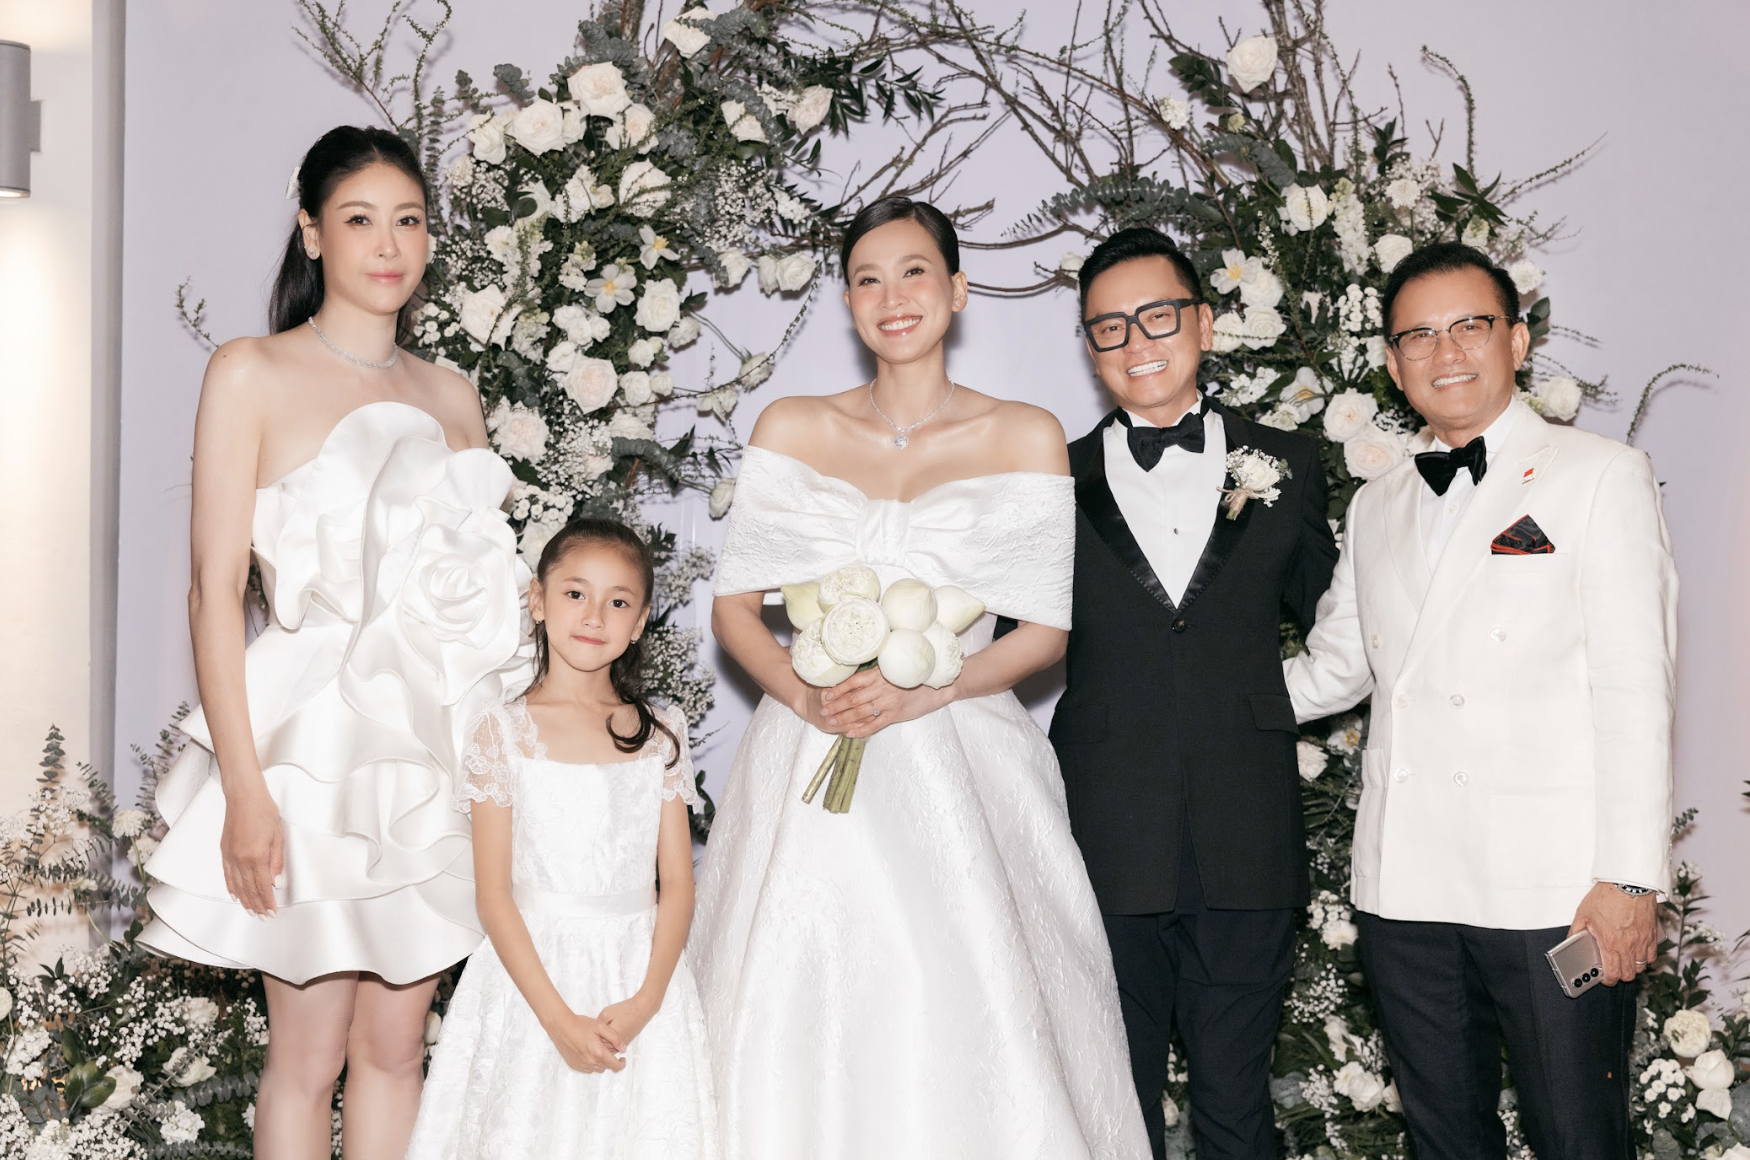 Đám cưới của Dương Mỹ Linh: Chỉ khoảng 60 khách mời, Hoa hậu Hà Kiều Anh cùng dàn sao tham dự - Ảnh 3.